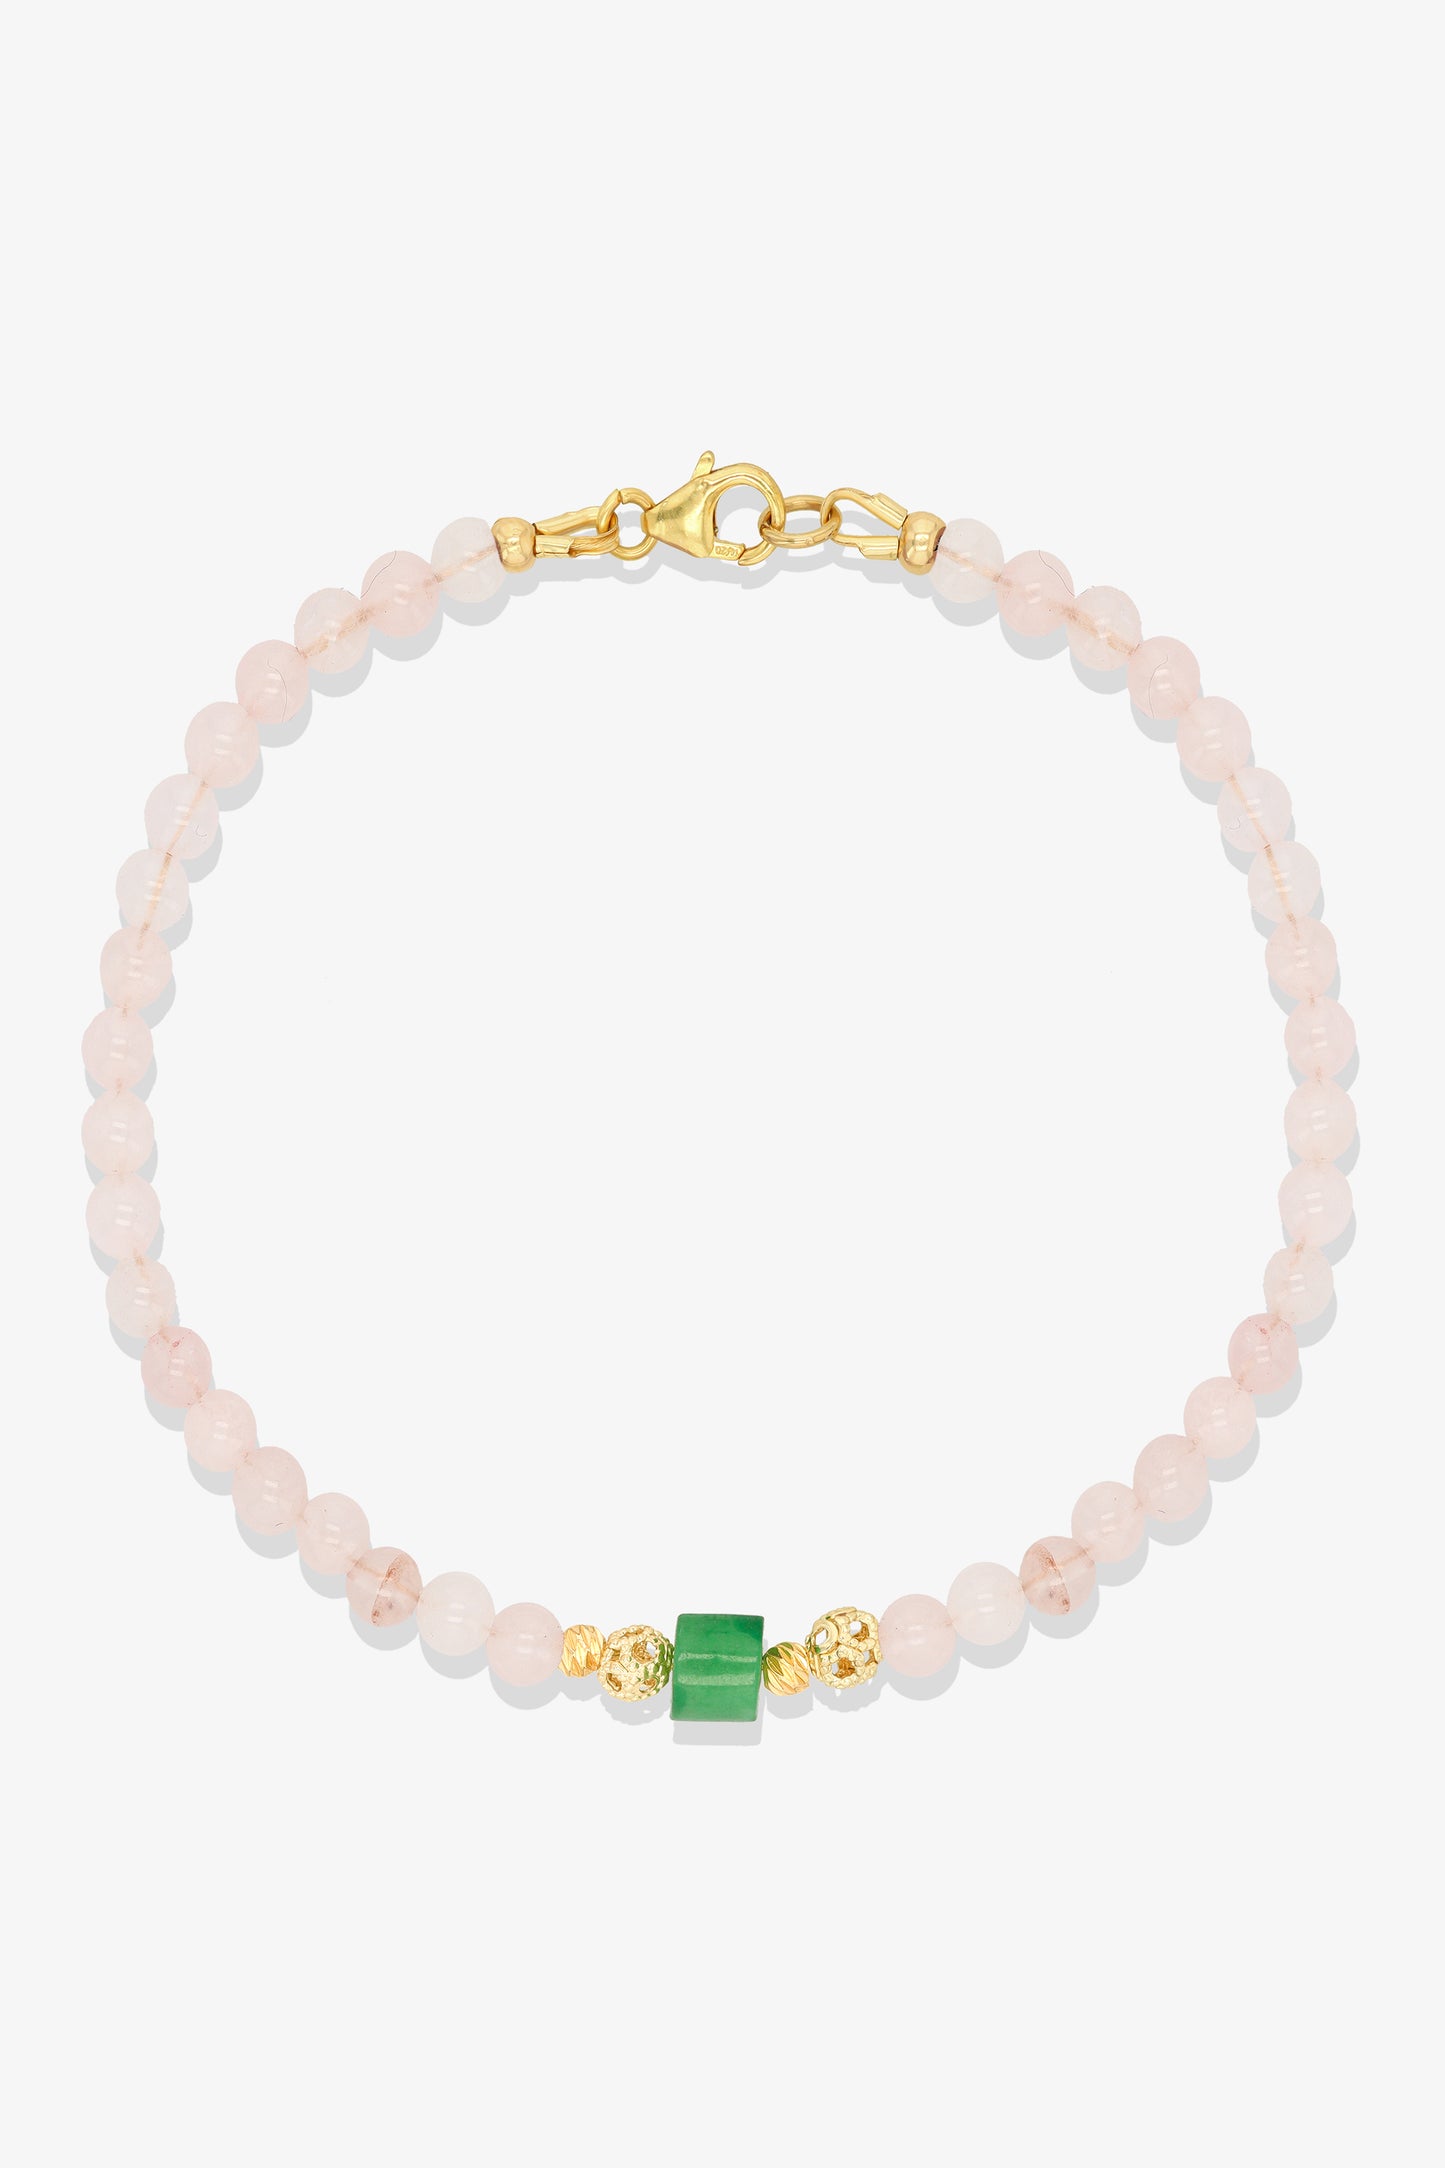 Morganite and Jade Gold Vermeil Crystal Bracelet - Wealth